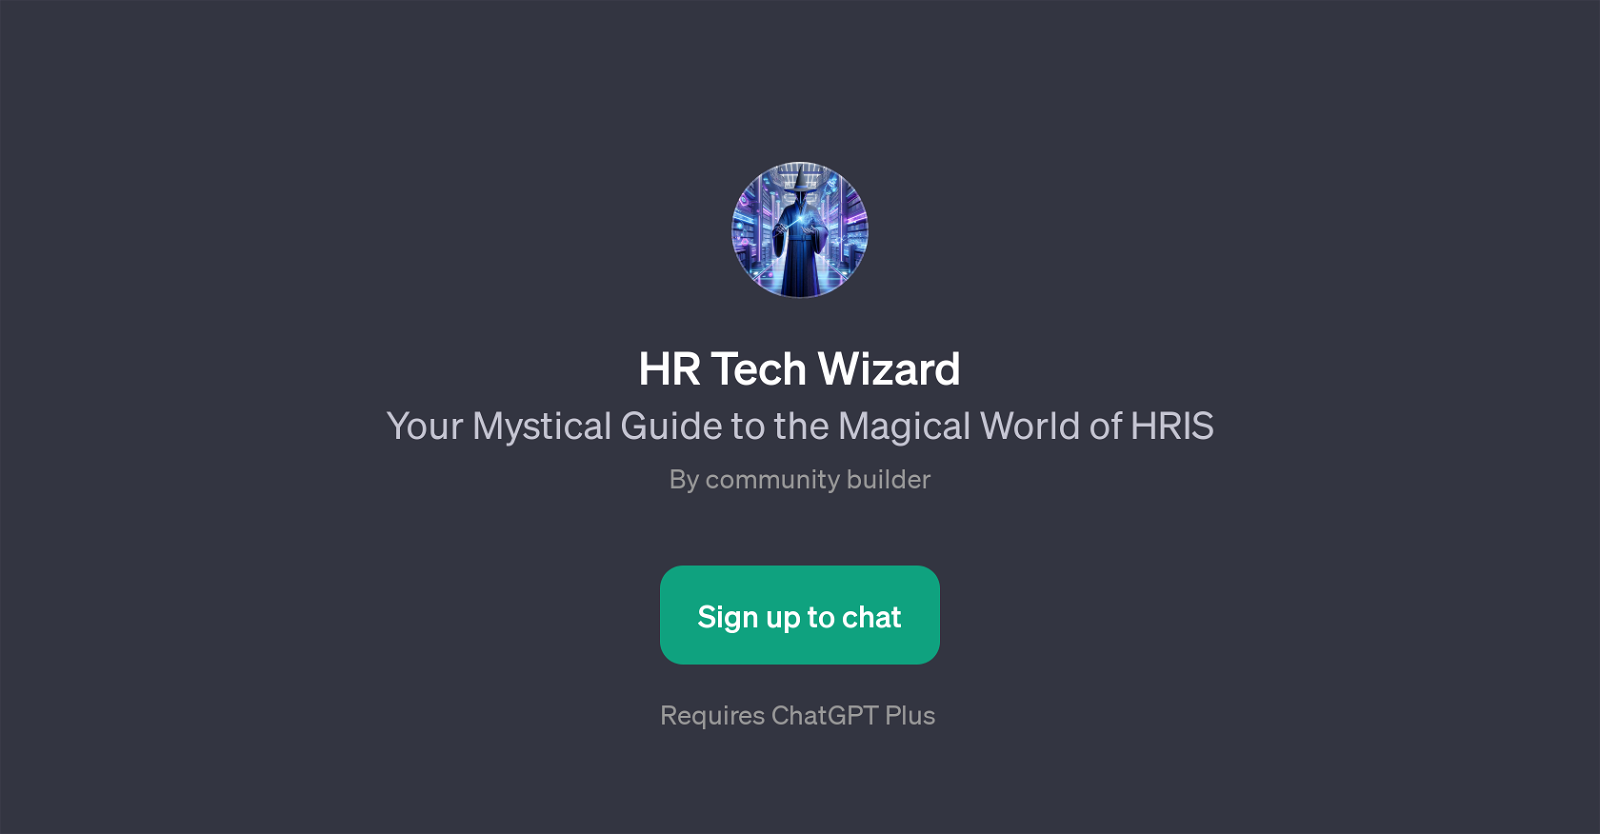 HR Tech Wizard website